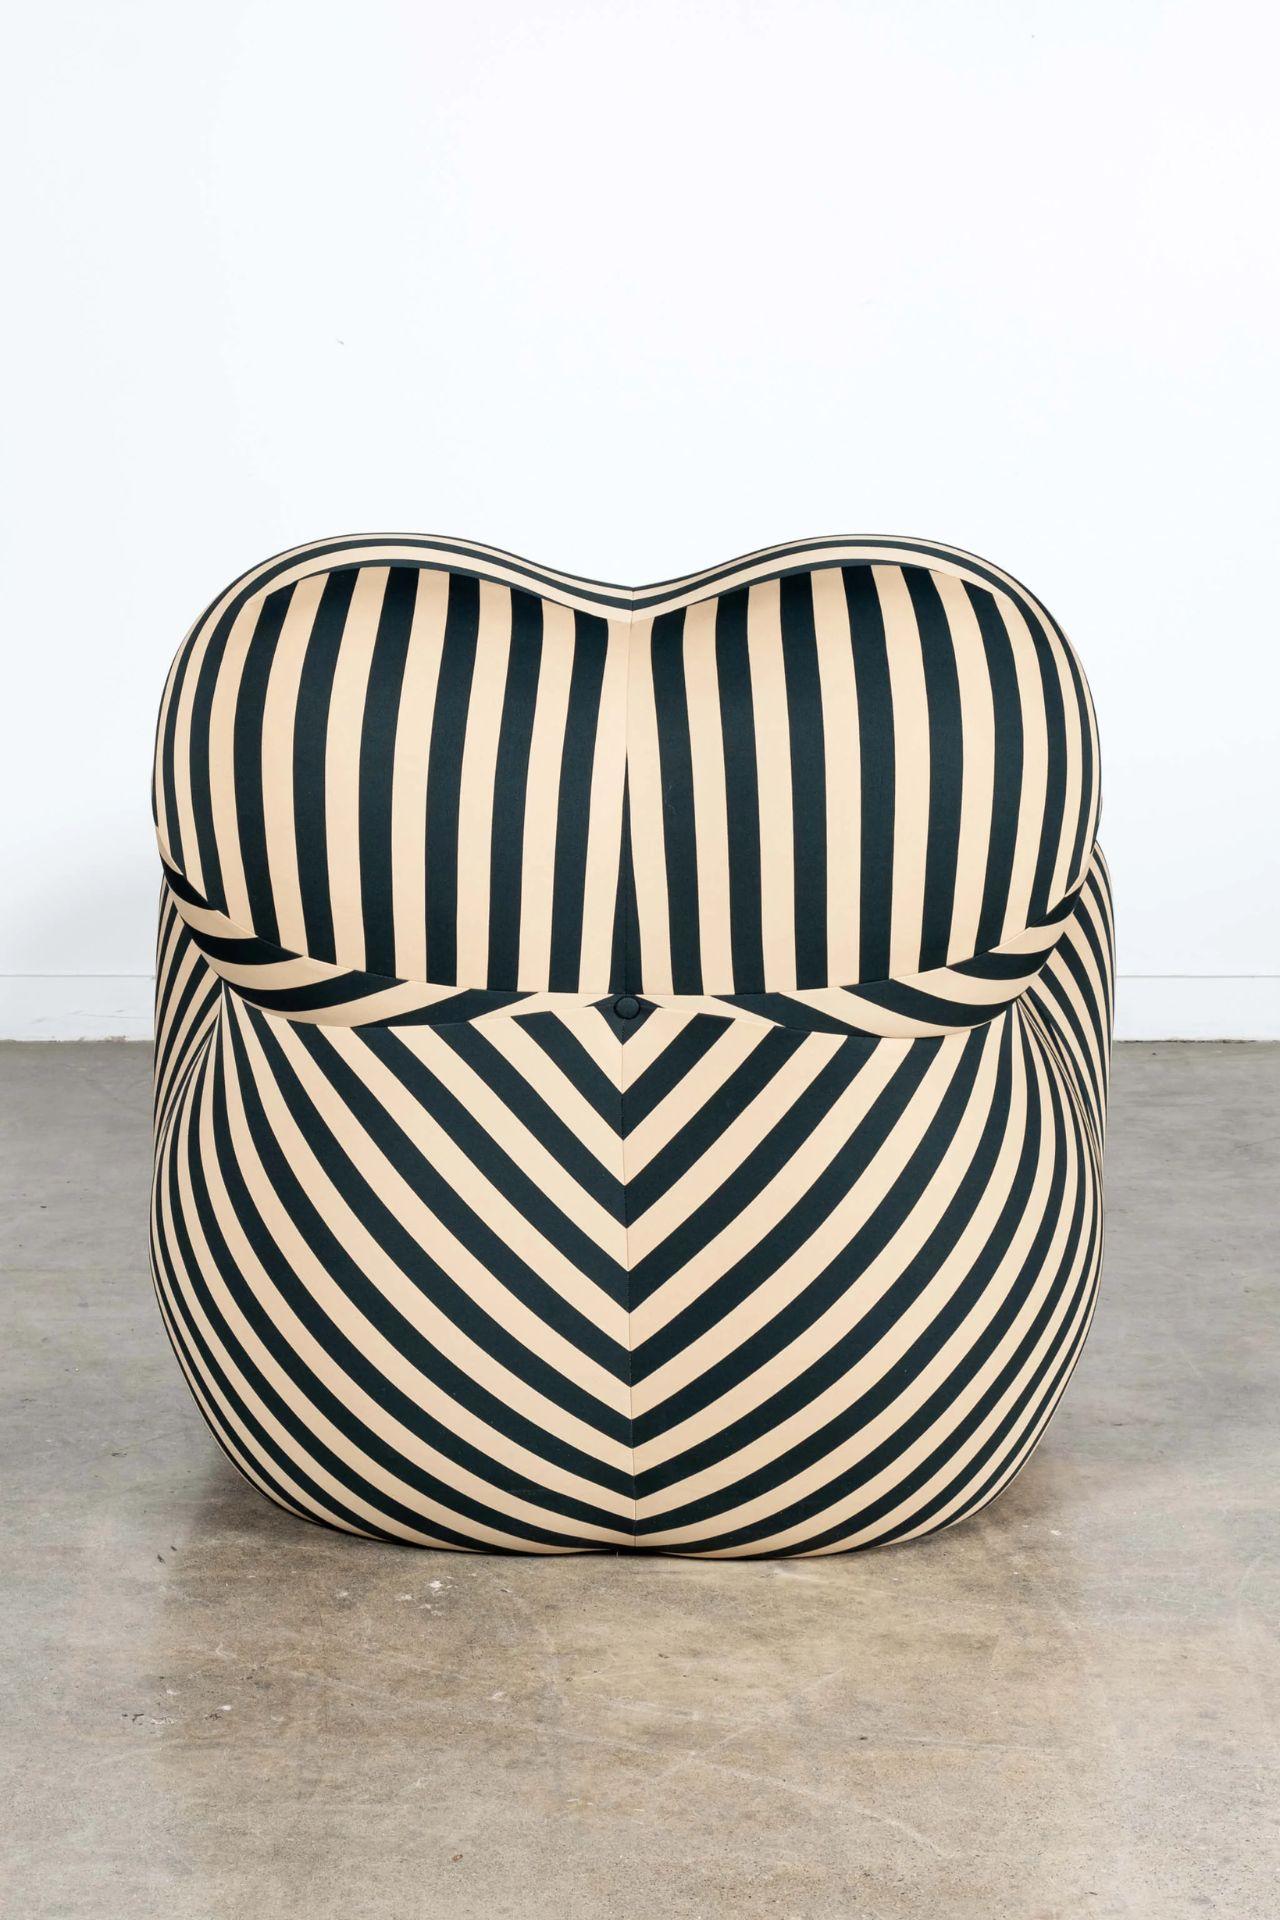 B&B Italia 'La Mamma' Up 5/6 Lounge Chair&Ottoman, Green Stripe by Gaetano Pesce In Excellent Condition For Sale In Toronto, CA